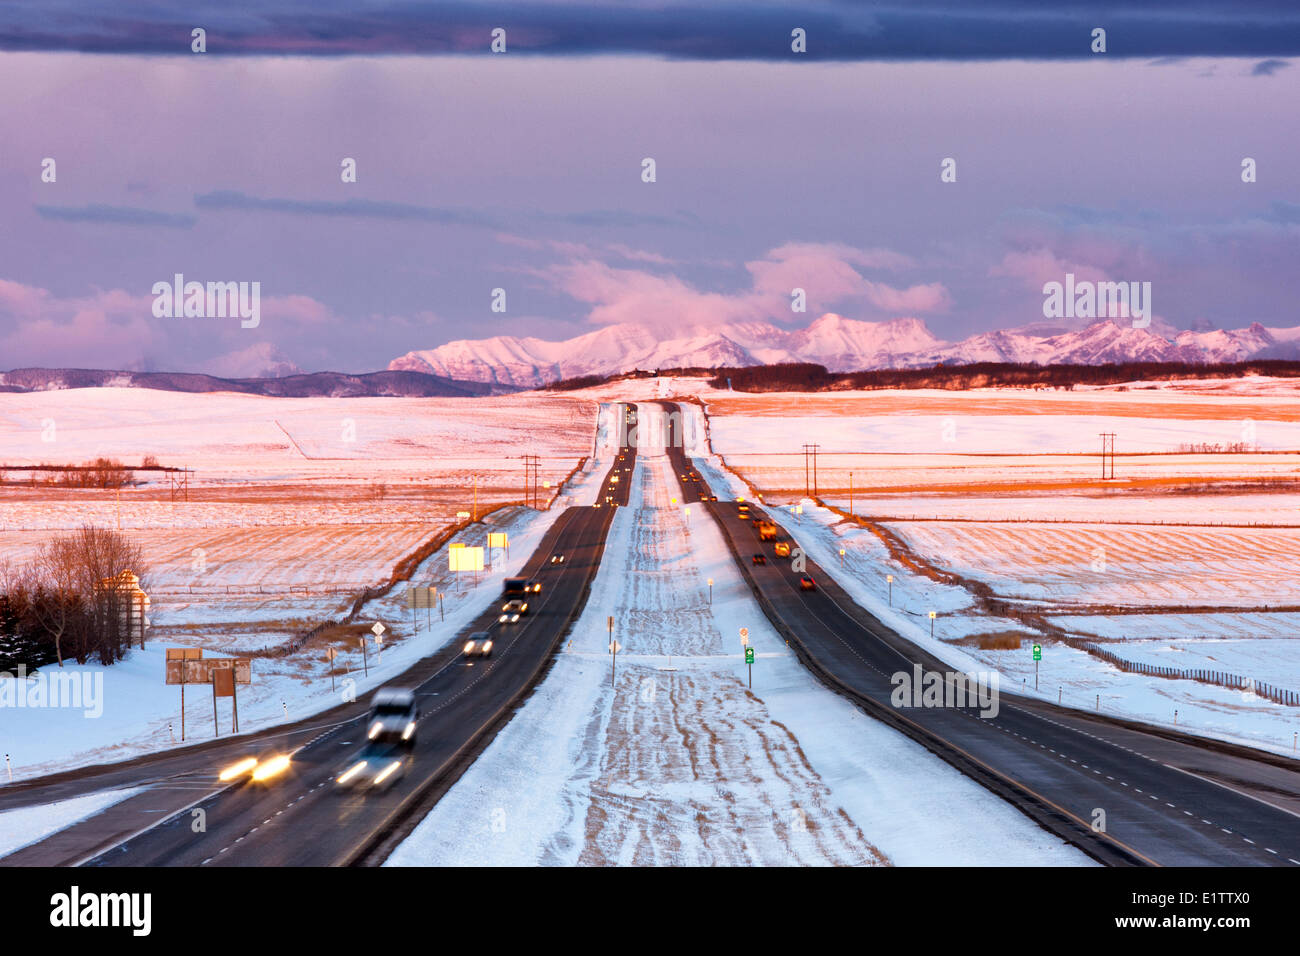 Anzeigen des Trans-Canada Highway und Rocky Mountains, wie die Sonne aufgeht, springen Boden Road, Alberta, Kanada Stockfoto